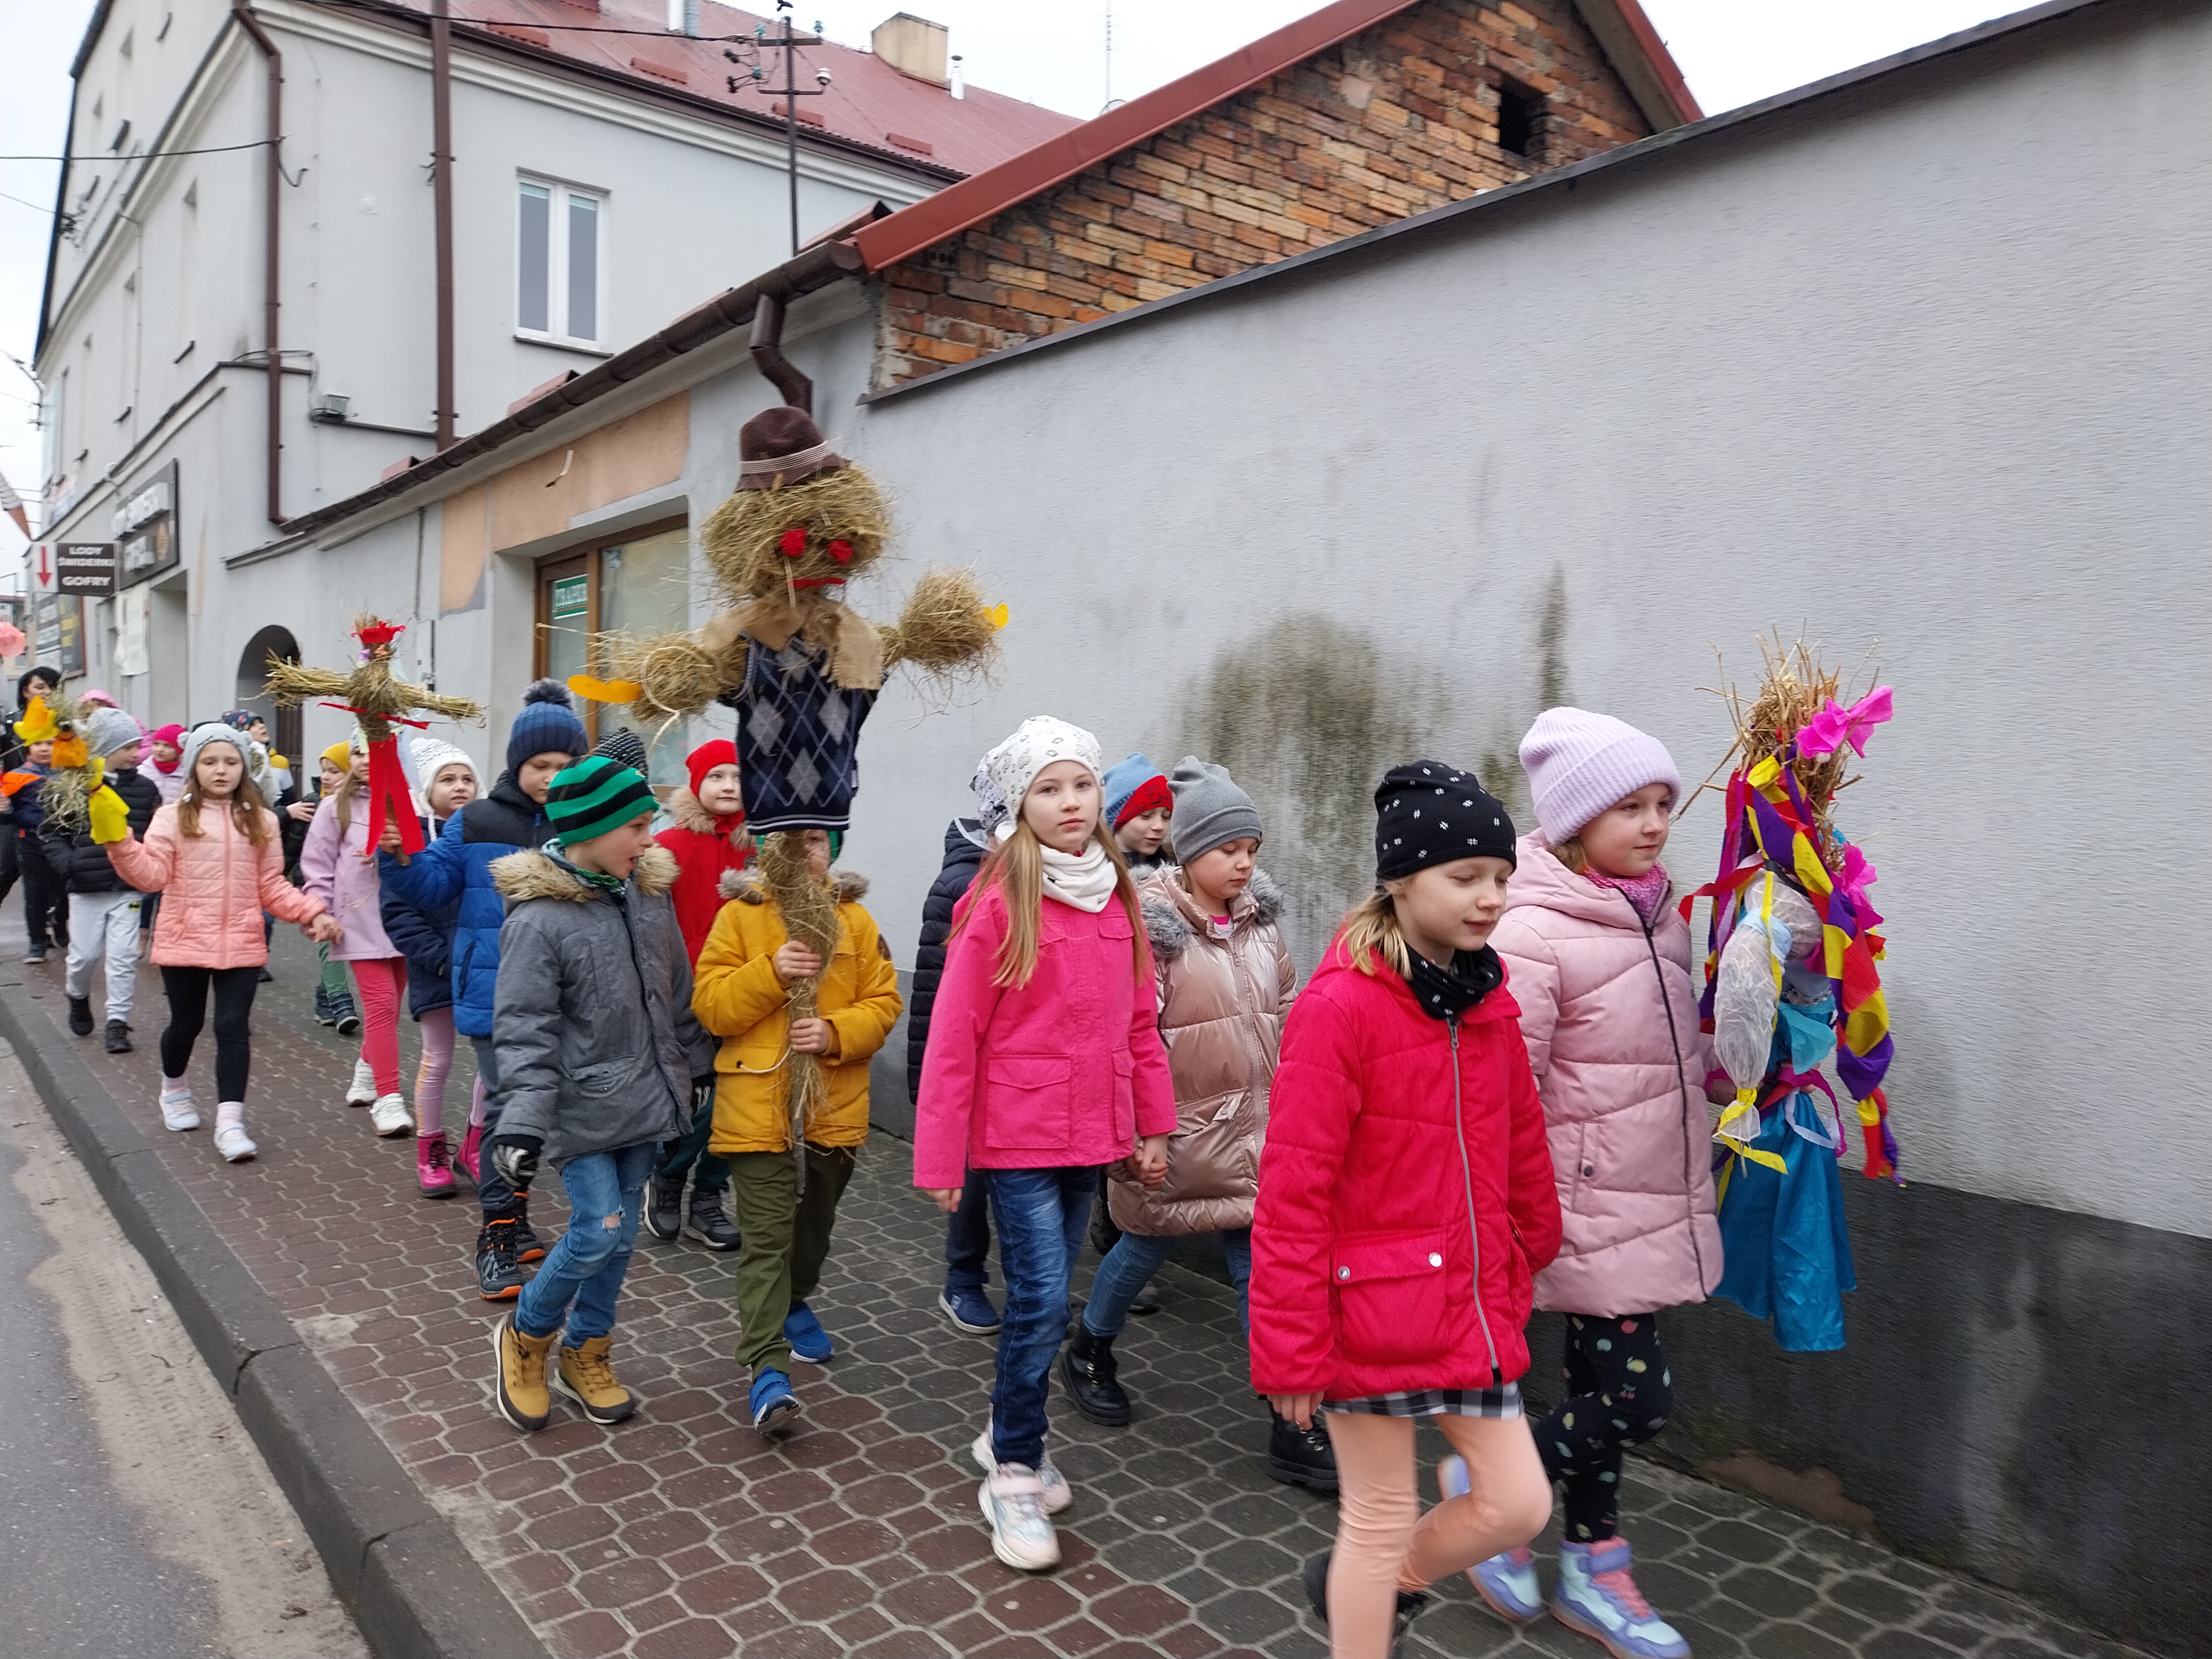 Grupa dzieci idzie ulicą niosąc marzanny